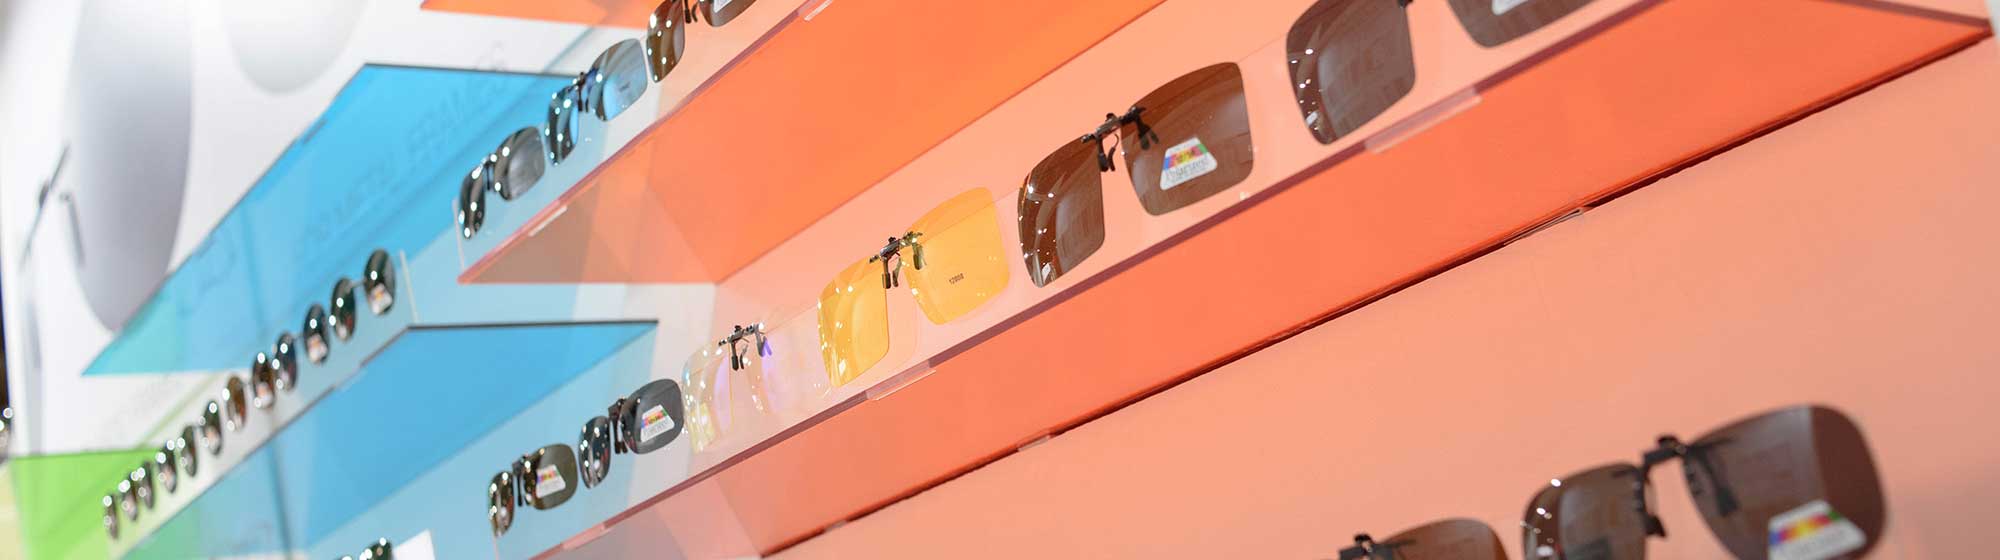 Plusieurs lunettes présentées sur un mur